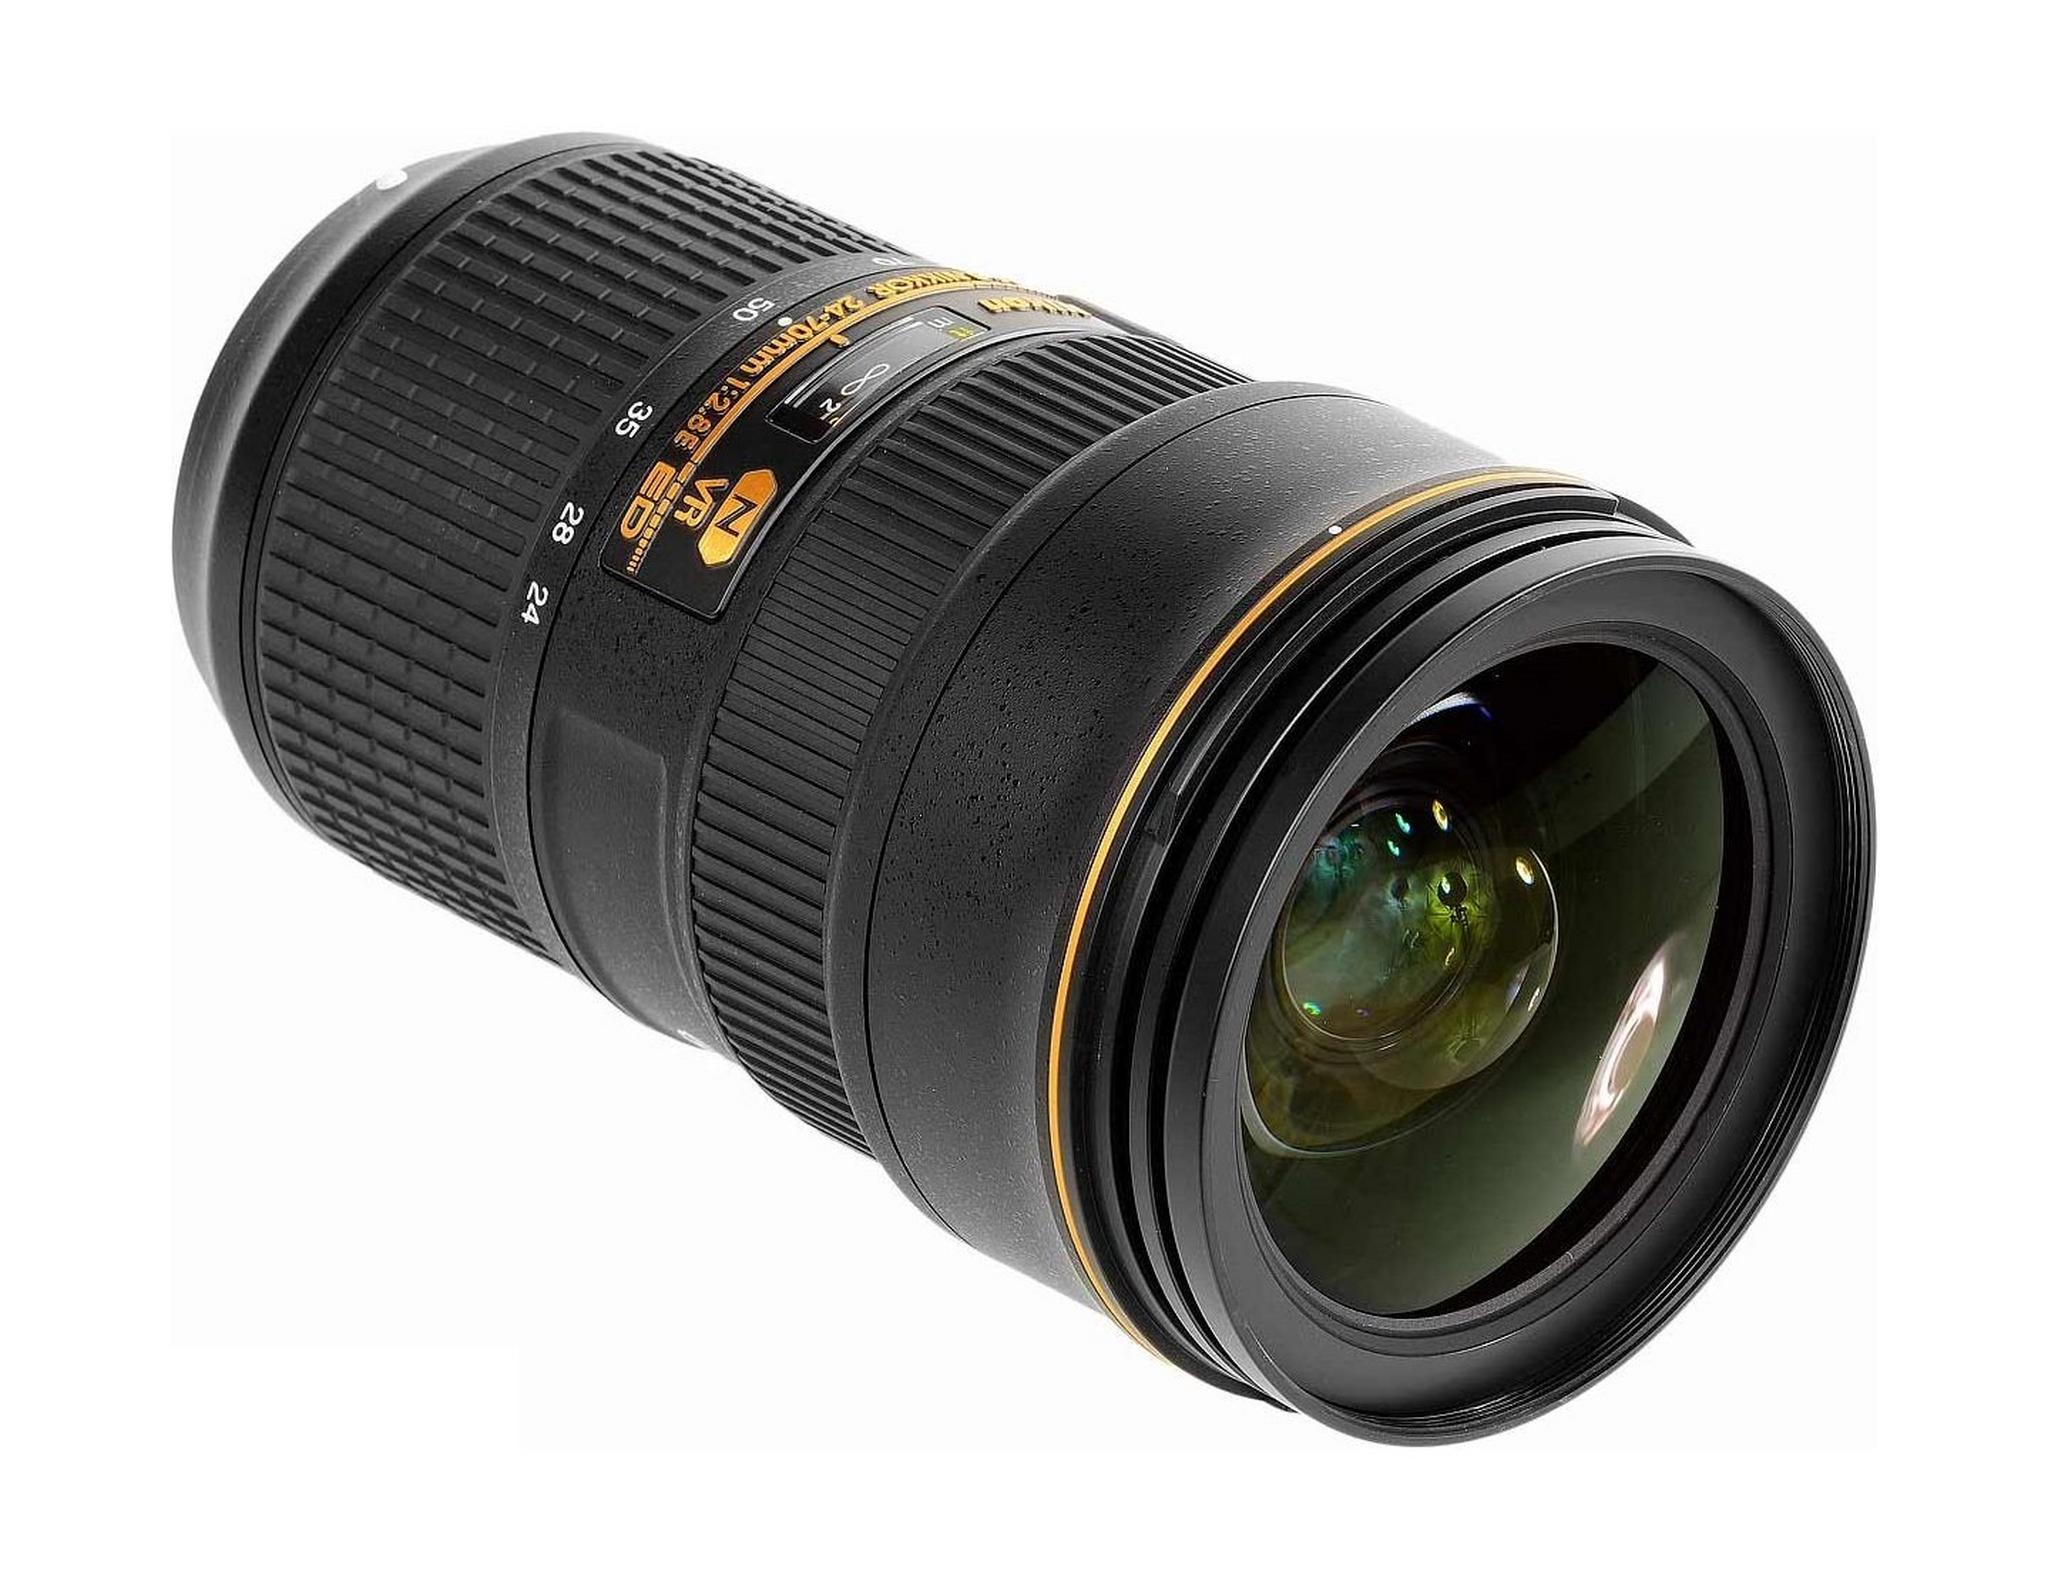 Nikon AF-S 24-70mm F/2.8E ED VR Zoom Lens - Black